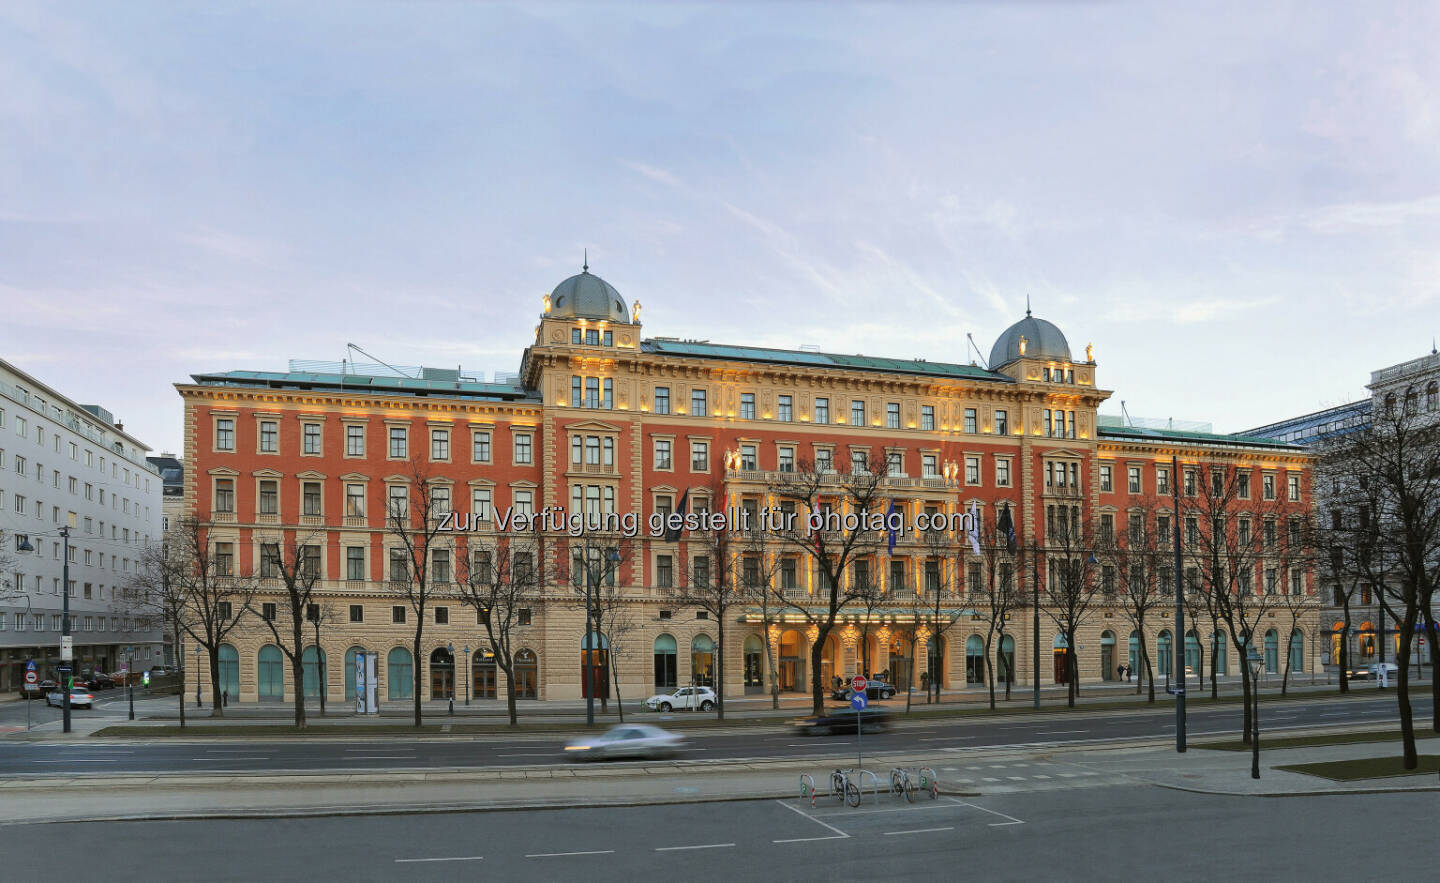 Warimpex und UBM verkaufen Anteile am Palais Hansen an die Wiener Städtische (c) Warimpex.jpeg